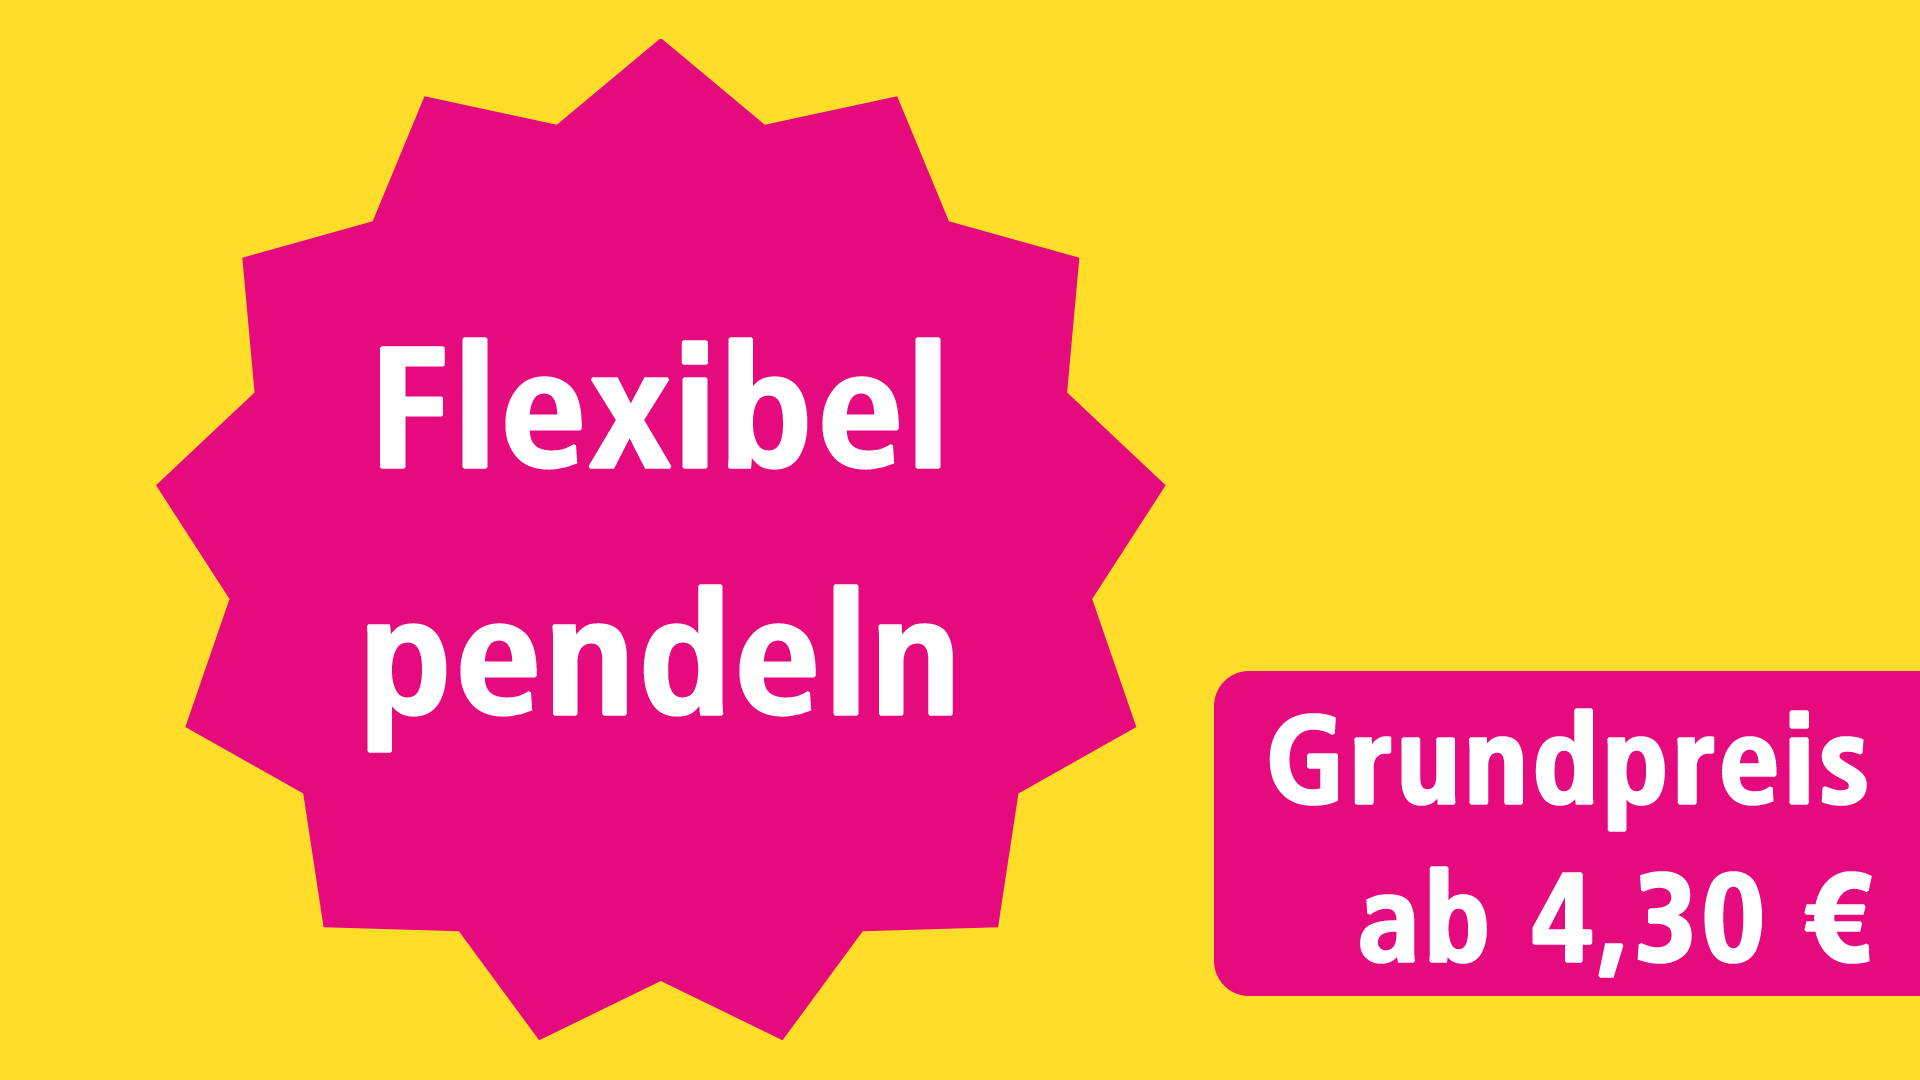 Flexibel pendeln - Grundpreis ab 4,30 €